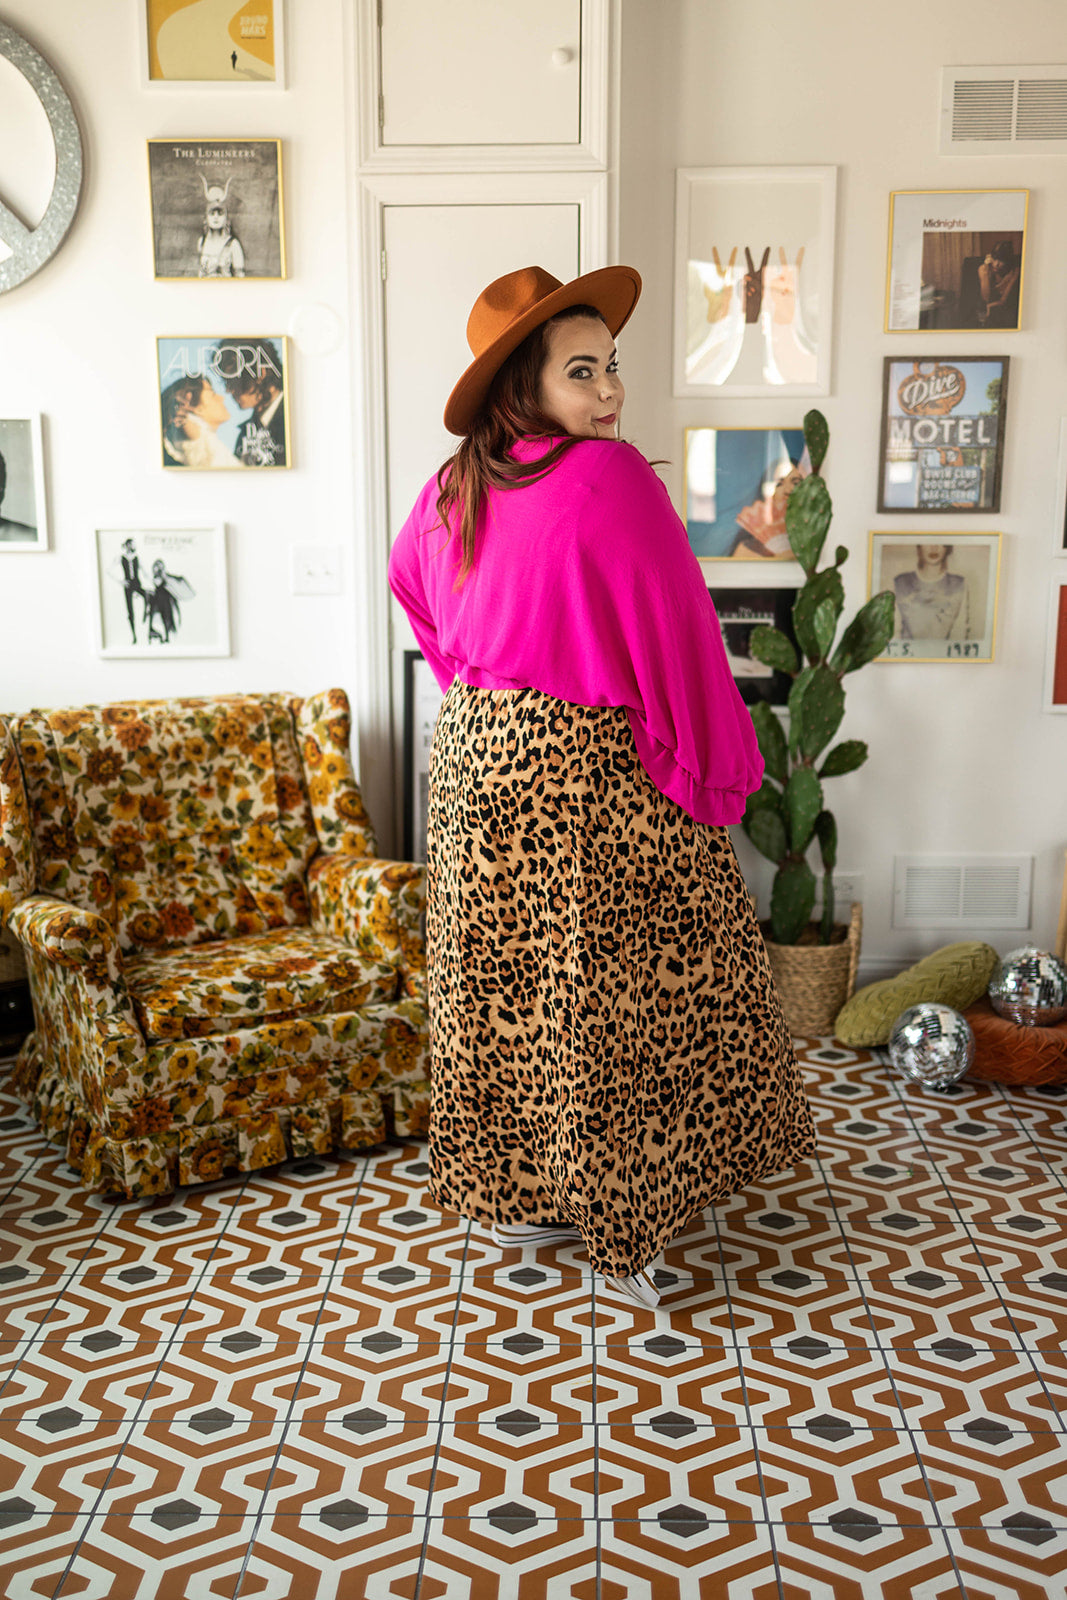 Zendaya goes big in animal print shorts and bra at Paris Fashion